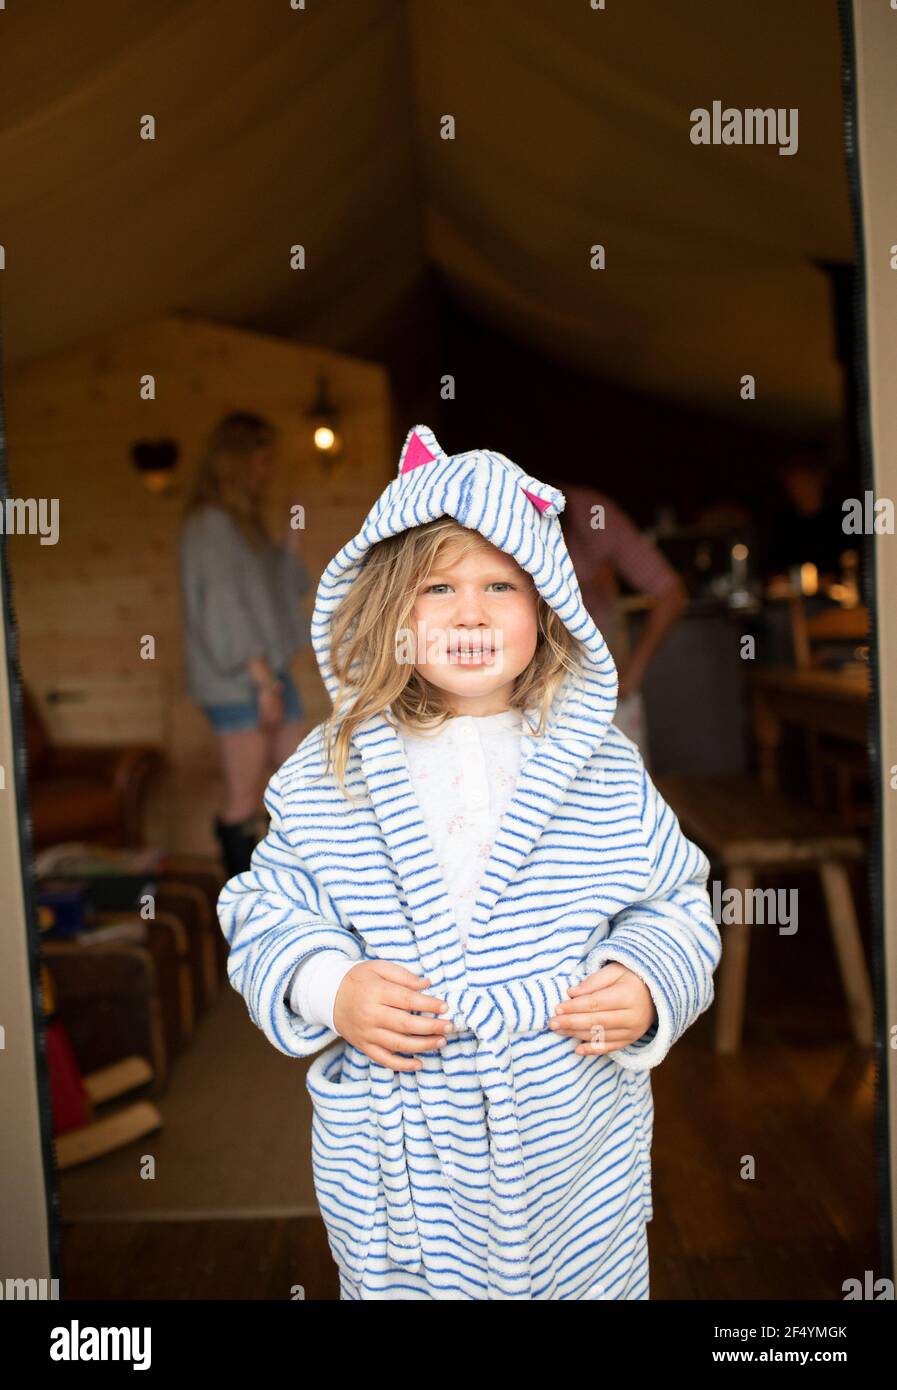 Ritratto ragazza carina in accappatoio a righe nella porta della cabina Foto Stock